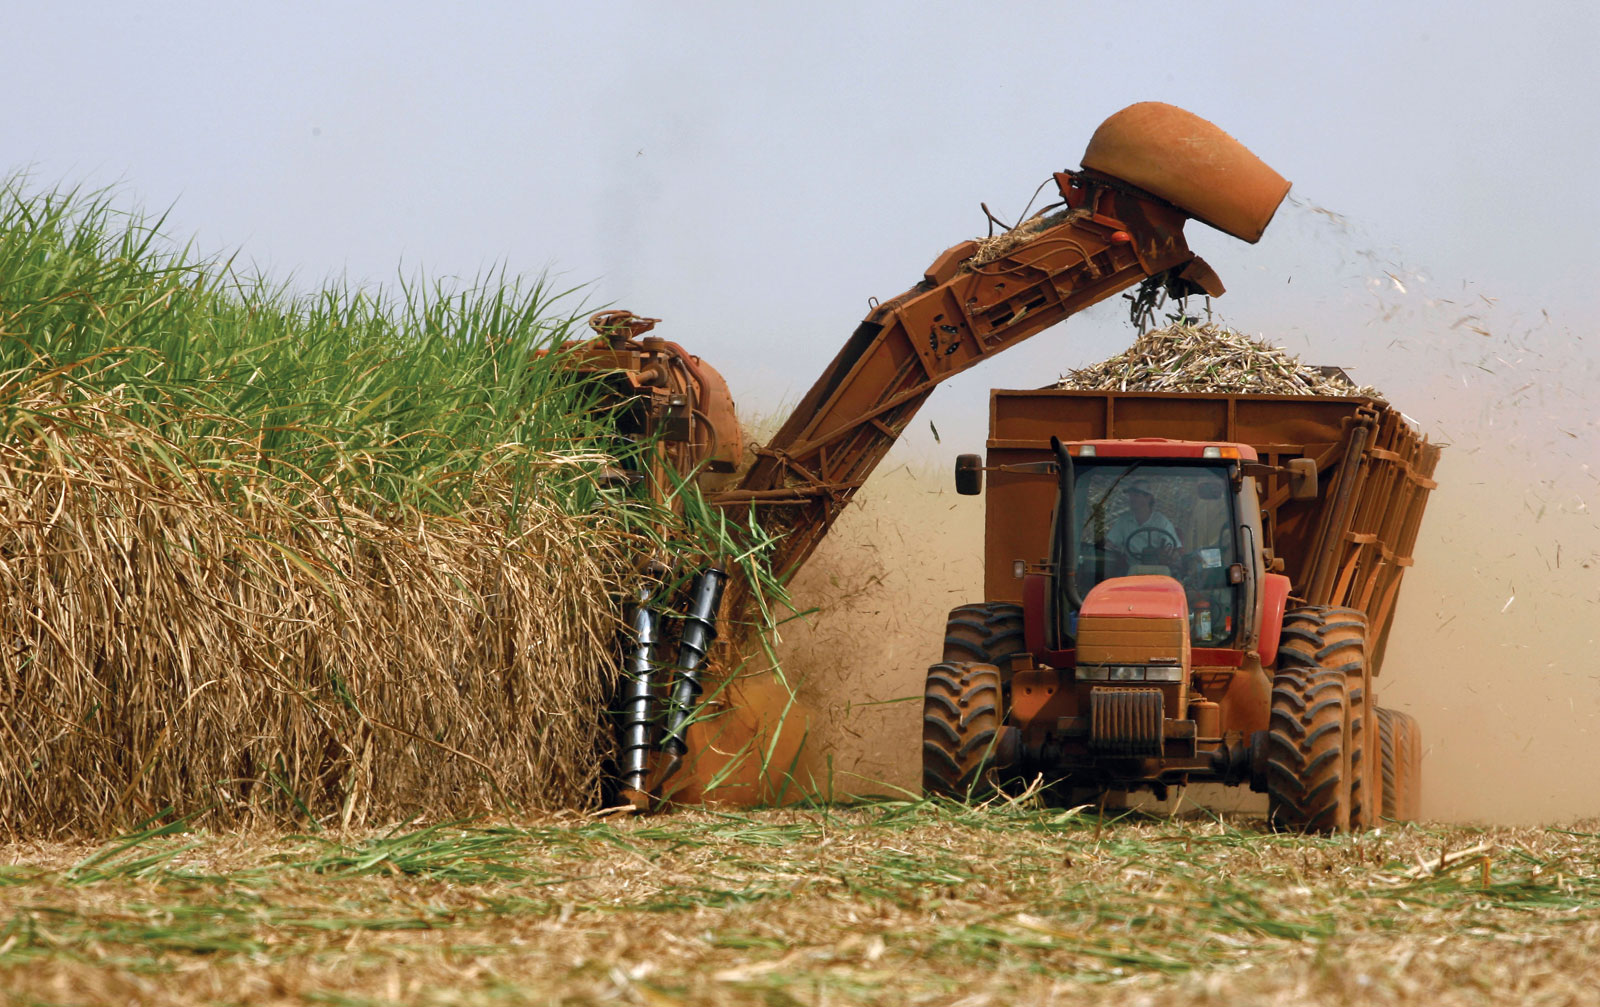 Canal Rural: Safra 21/22 de cana-de-açúcar deve fechar com 525 milhões de toneladas, estima Unica | ABTTC